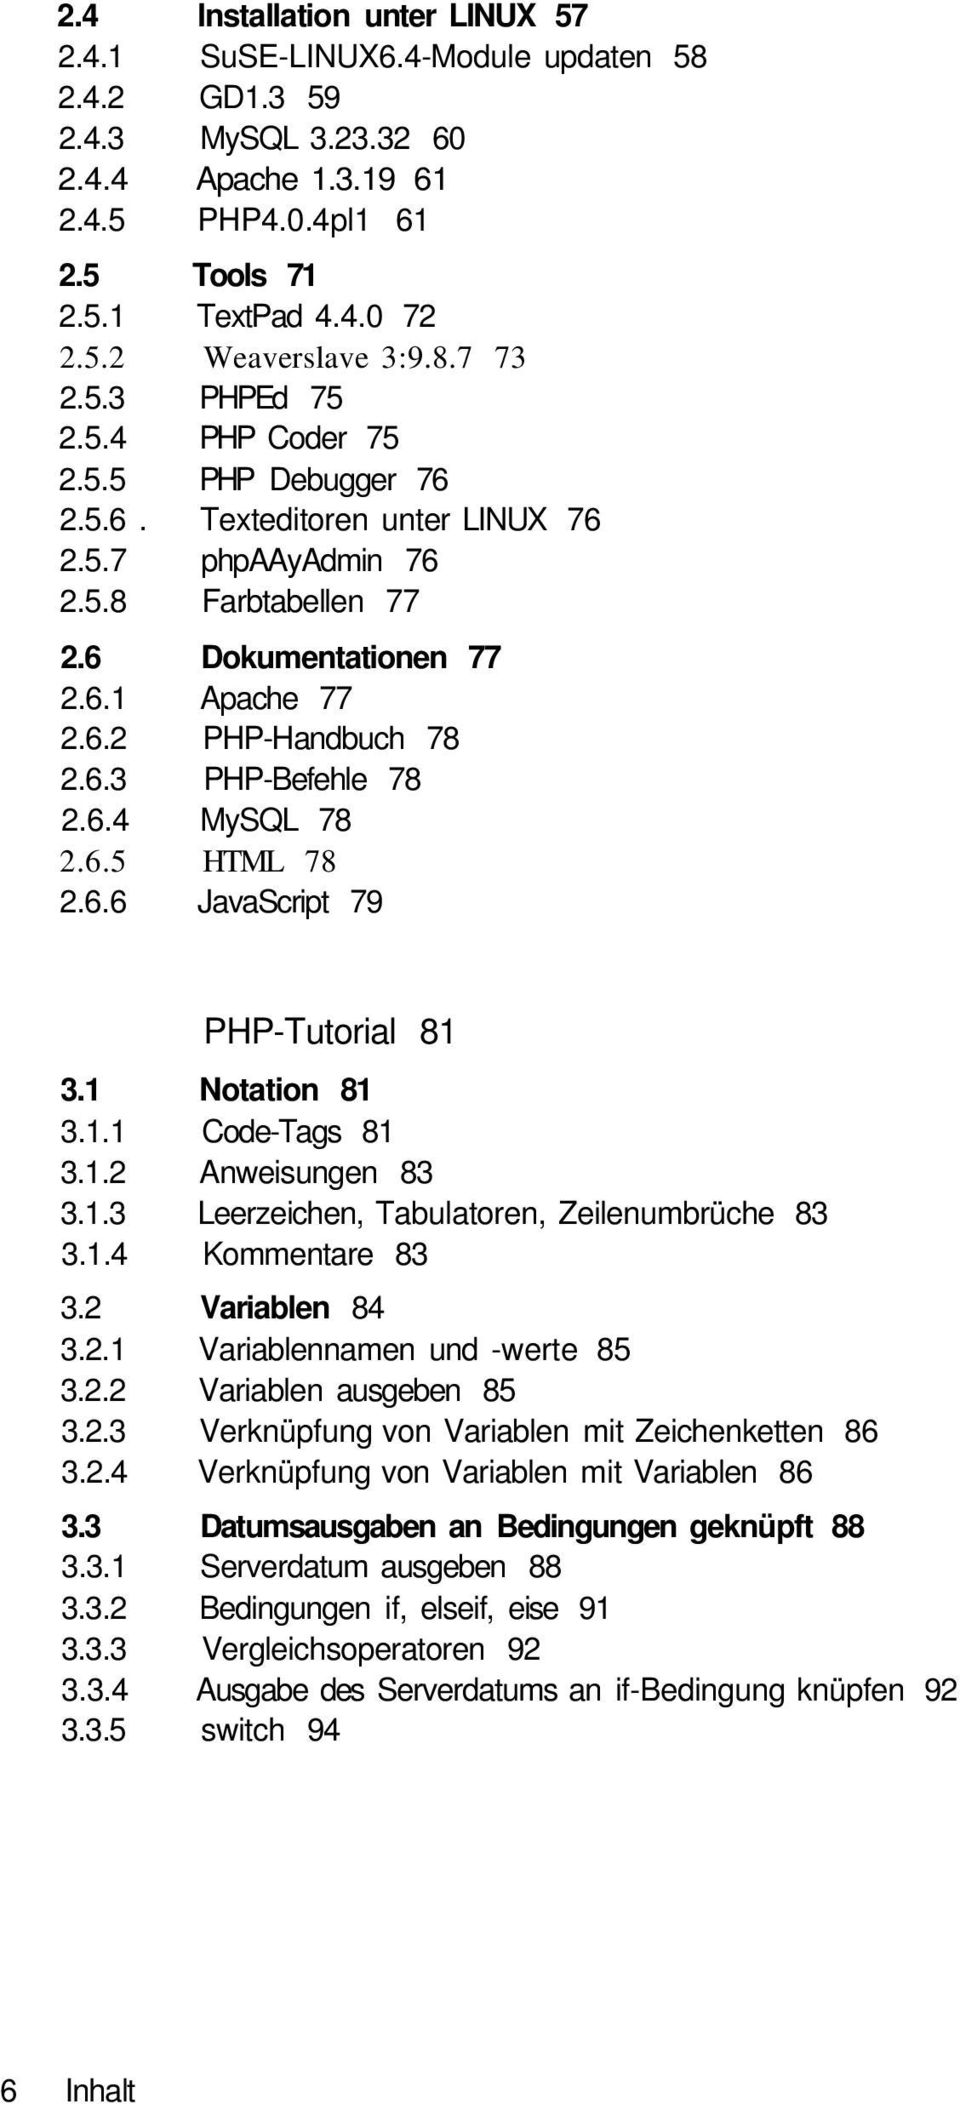 6.3 PHP-Befehle 78 2.6.4 MySQL 78 2.6.5 HTML 78 2.6.6 JavaScript 79 PHP-Tutorial 81 3.1 Notation 81 3.1.1 Code-Tags 81 3.1.2 Anweisungen 83 3.1.3 Leerzeichen, Tabulatoren, Zeilenumbrüche 83 3.1.4 Kommentare 83 3.